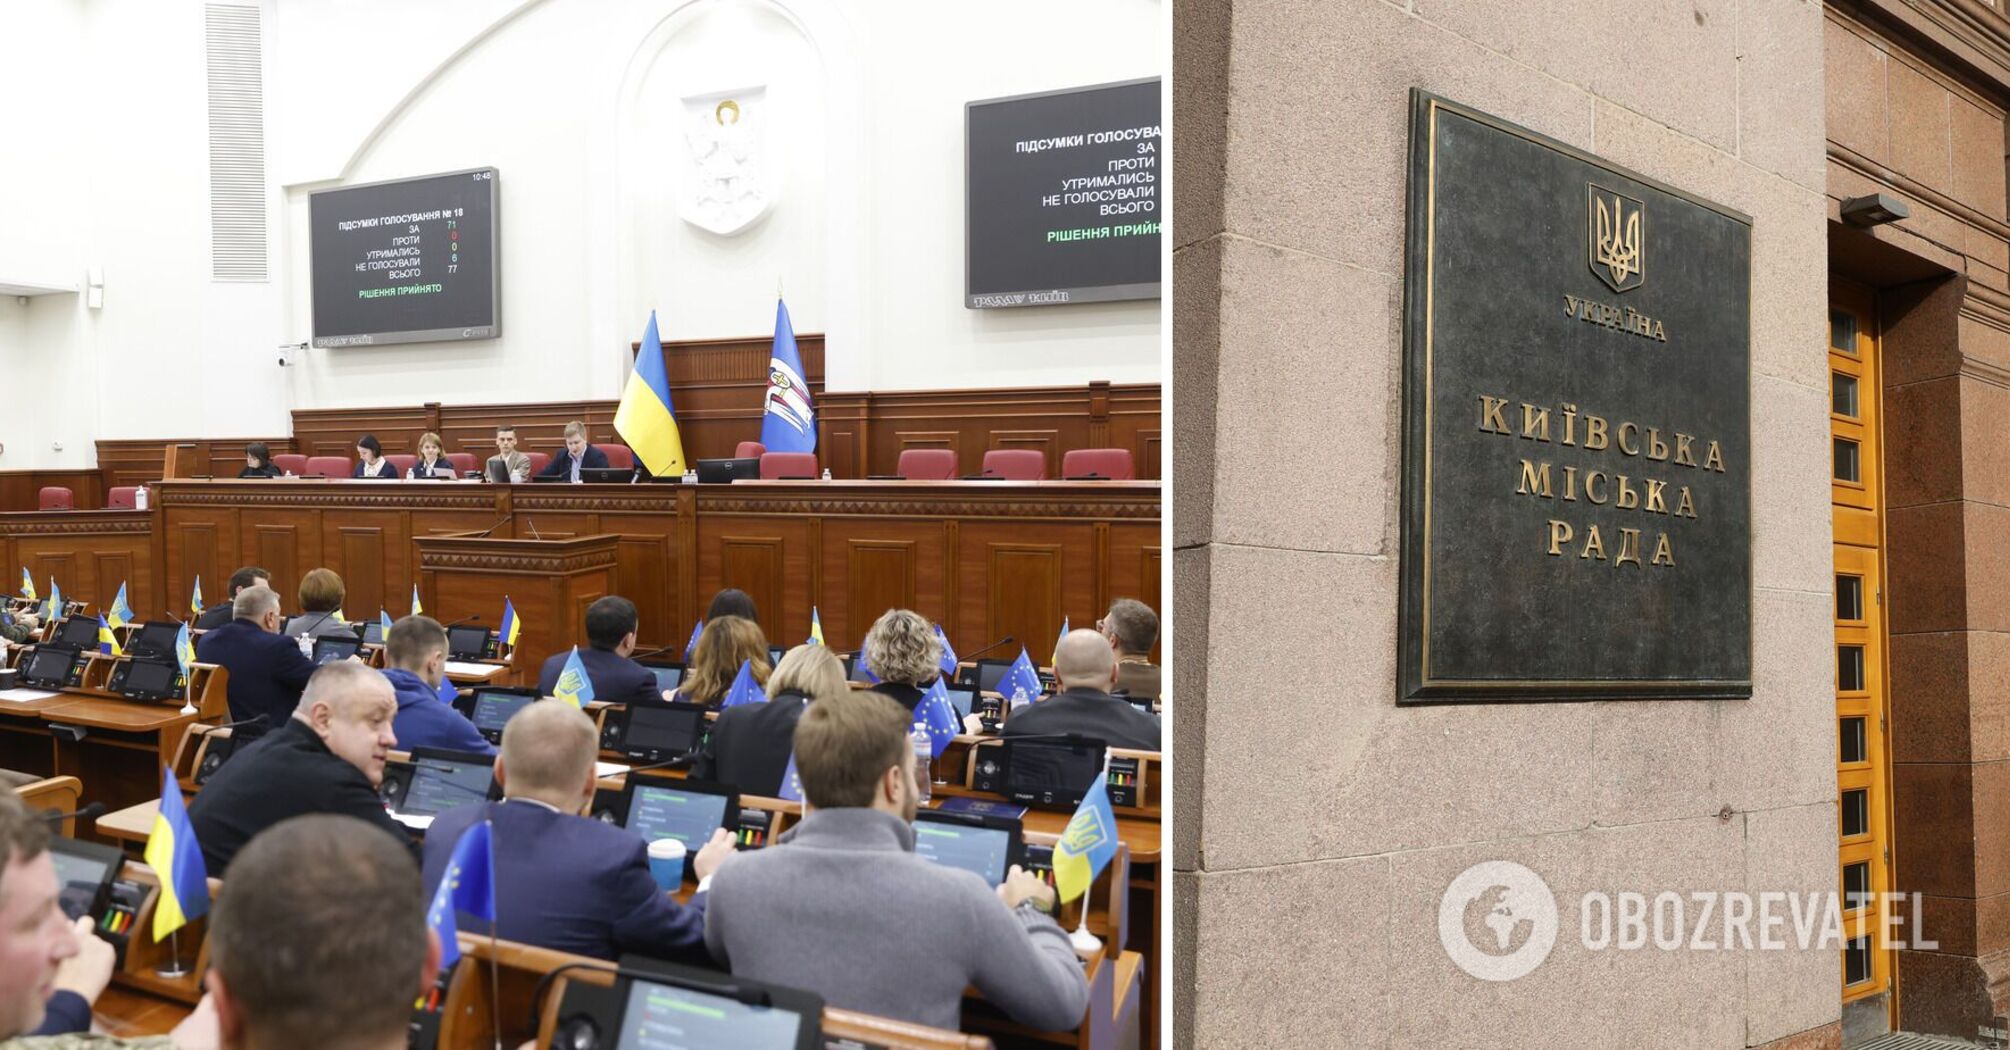 Rada Miasta Kijowa zmienia nazwy 26 instytucji edukacyjnych i kulturalnych w stolicy